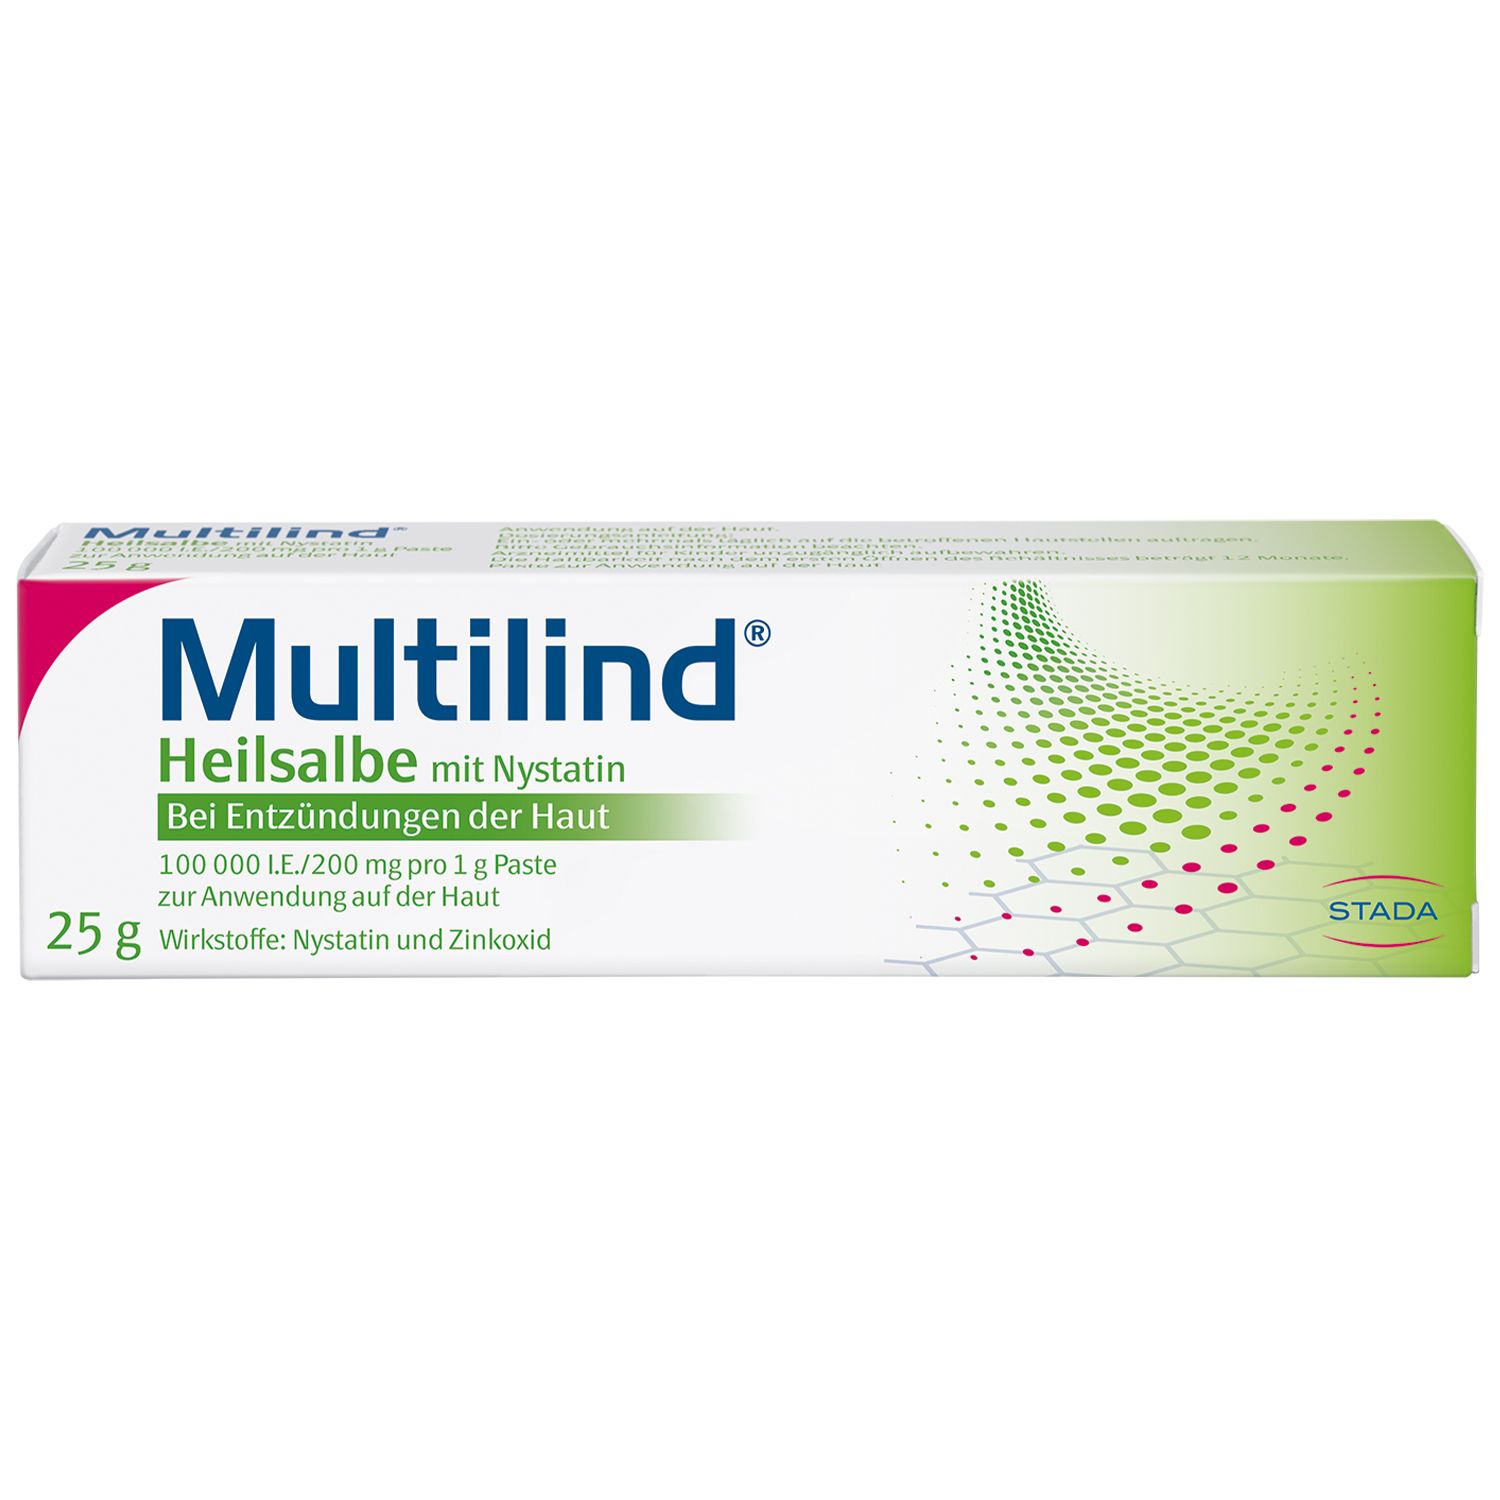 Multilind® Heilsalbe bei wunder und entzündeter Haut mit Zinkoxid und Nystatin